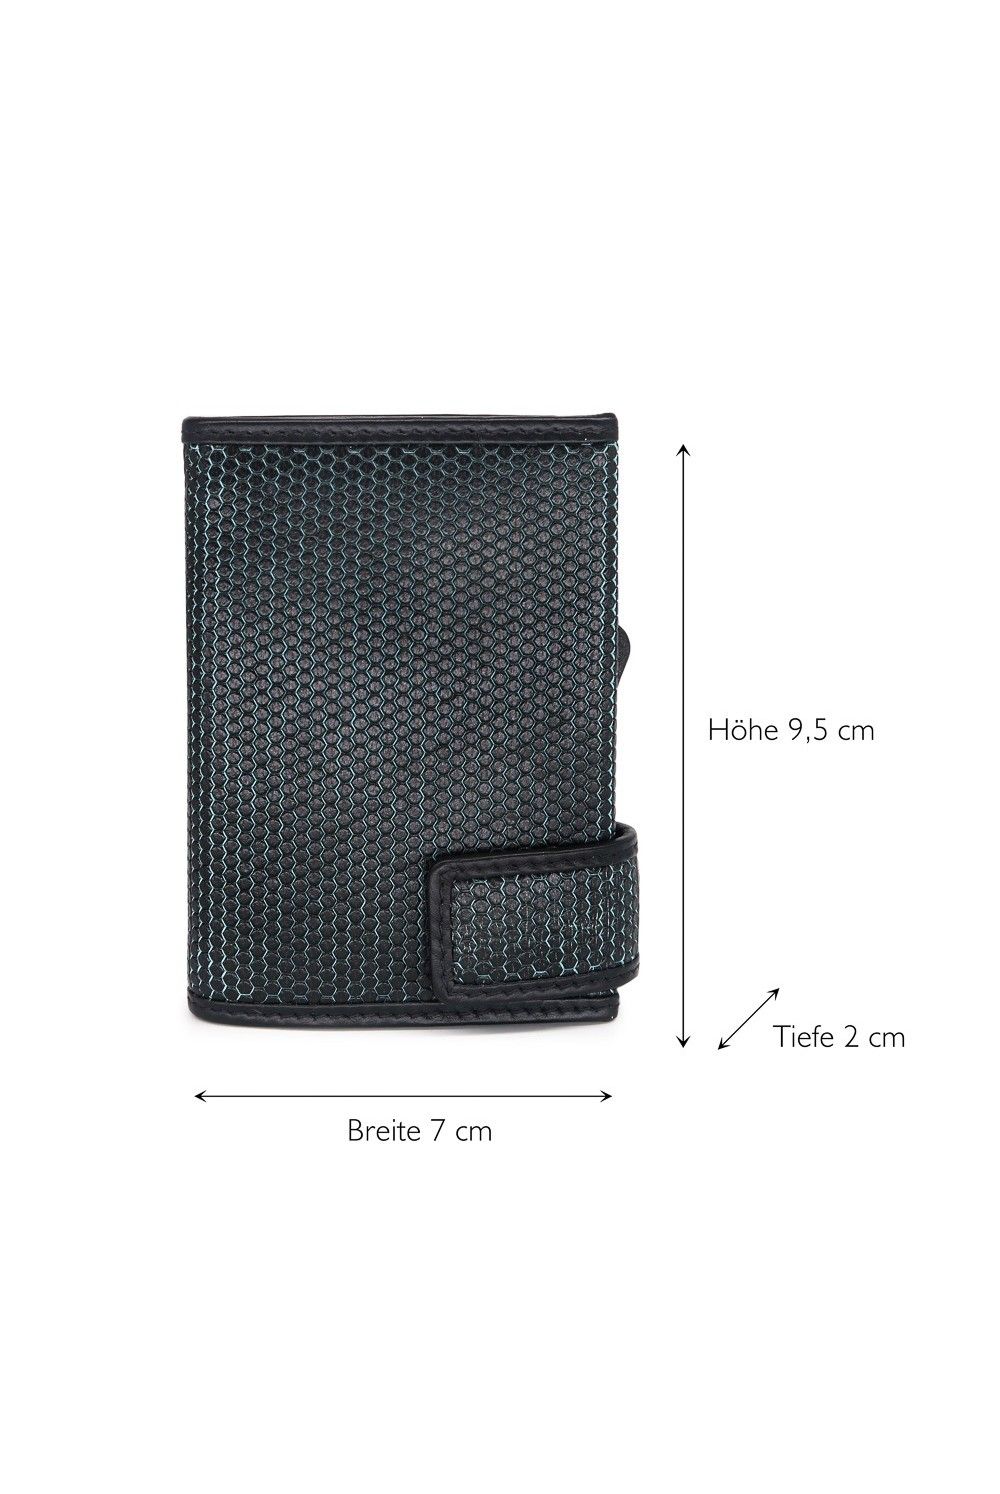 Porte-cartes SecWal DK Leather noir-turquoise